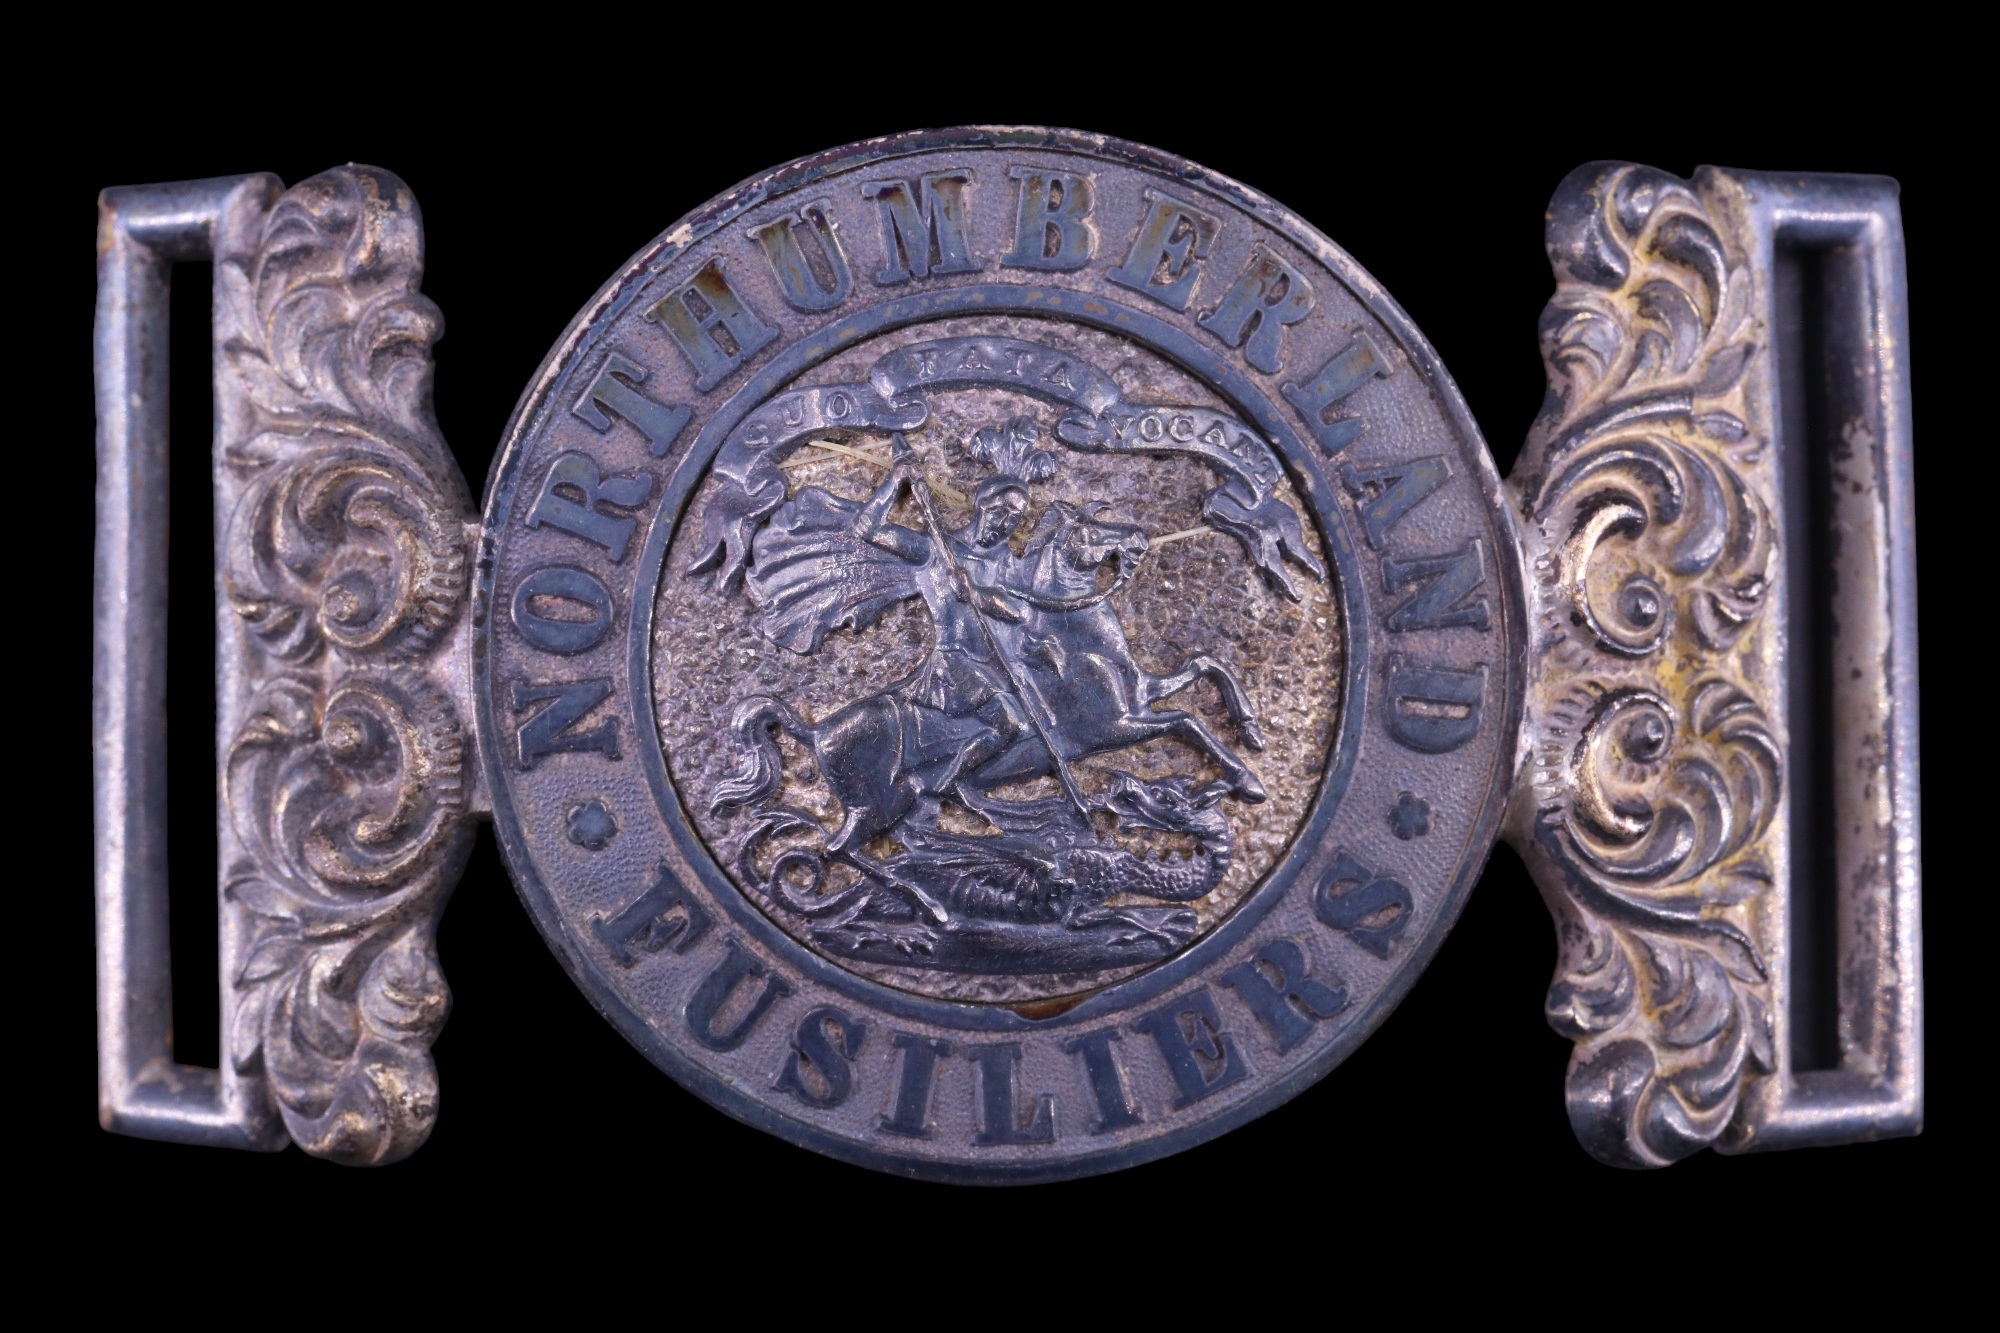 A Northumberland Fusiliers officer's waist belt locket